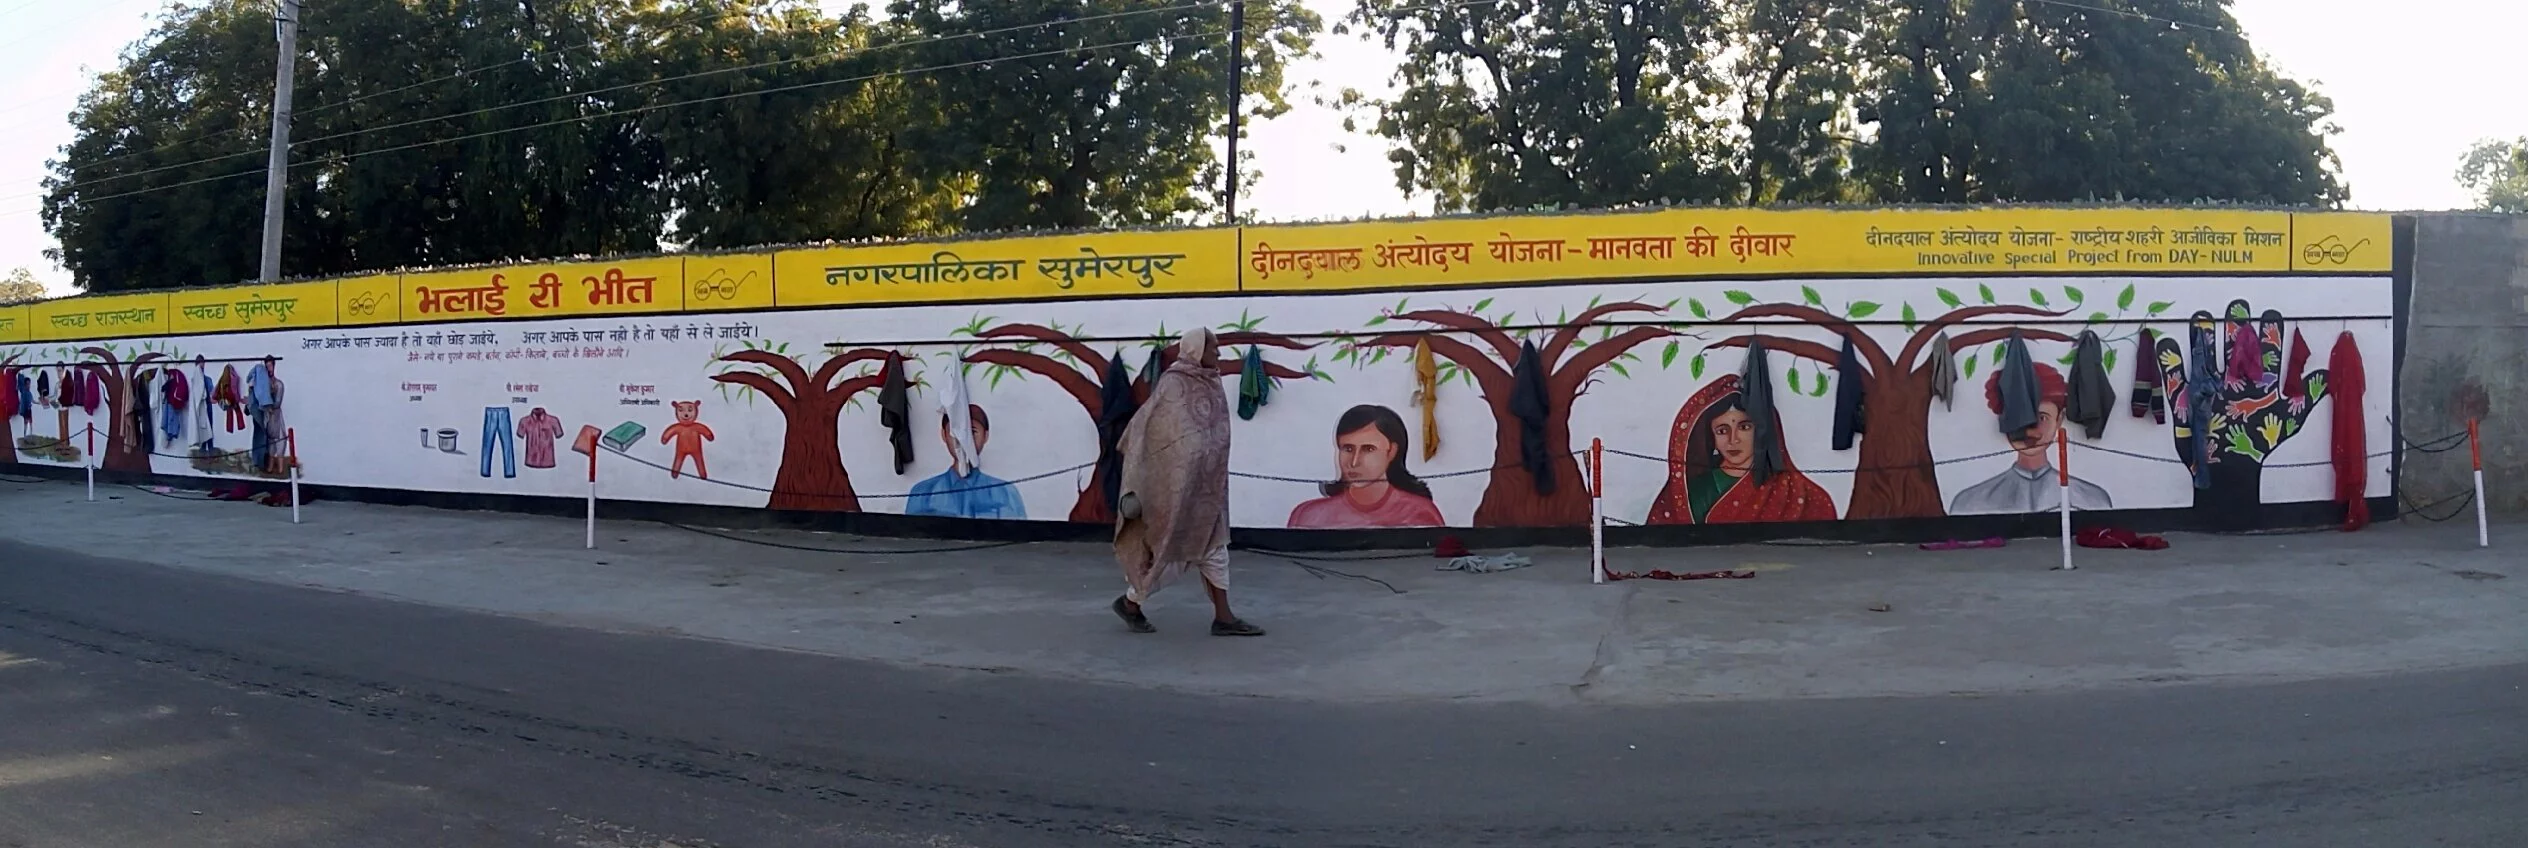 Charity Wall at Sumerpur - सुमेरपुर में भलाई री भीत 